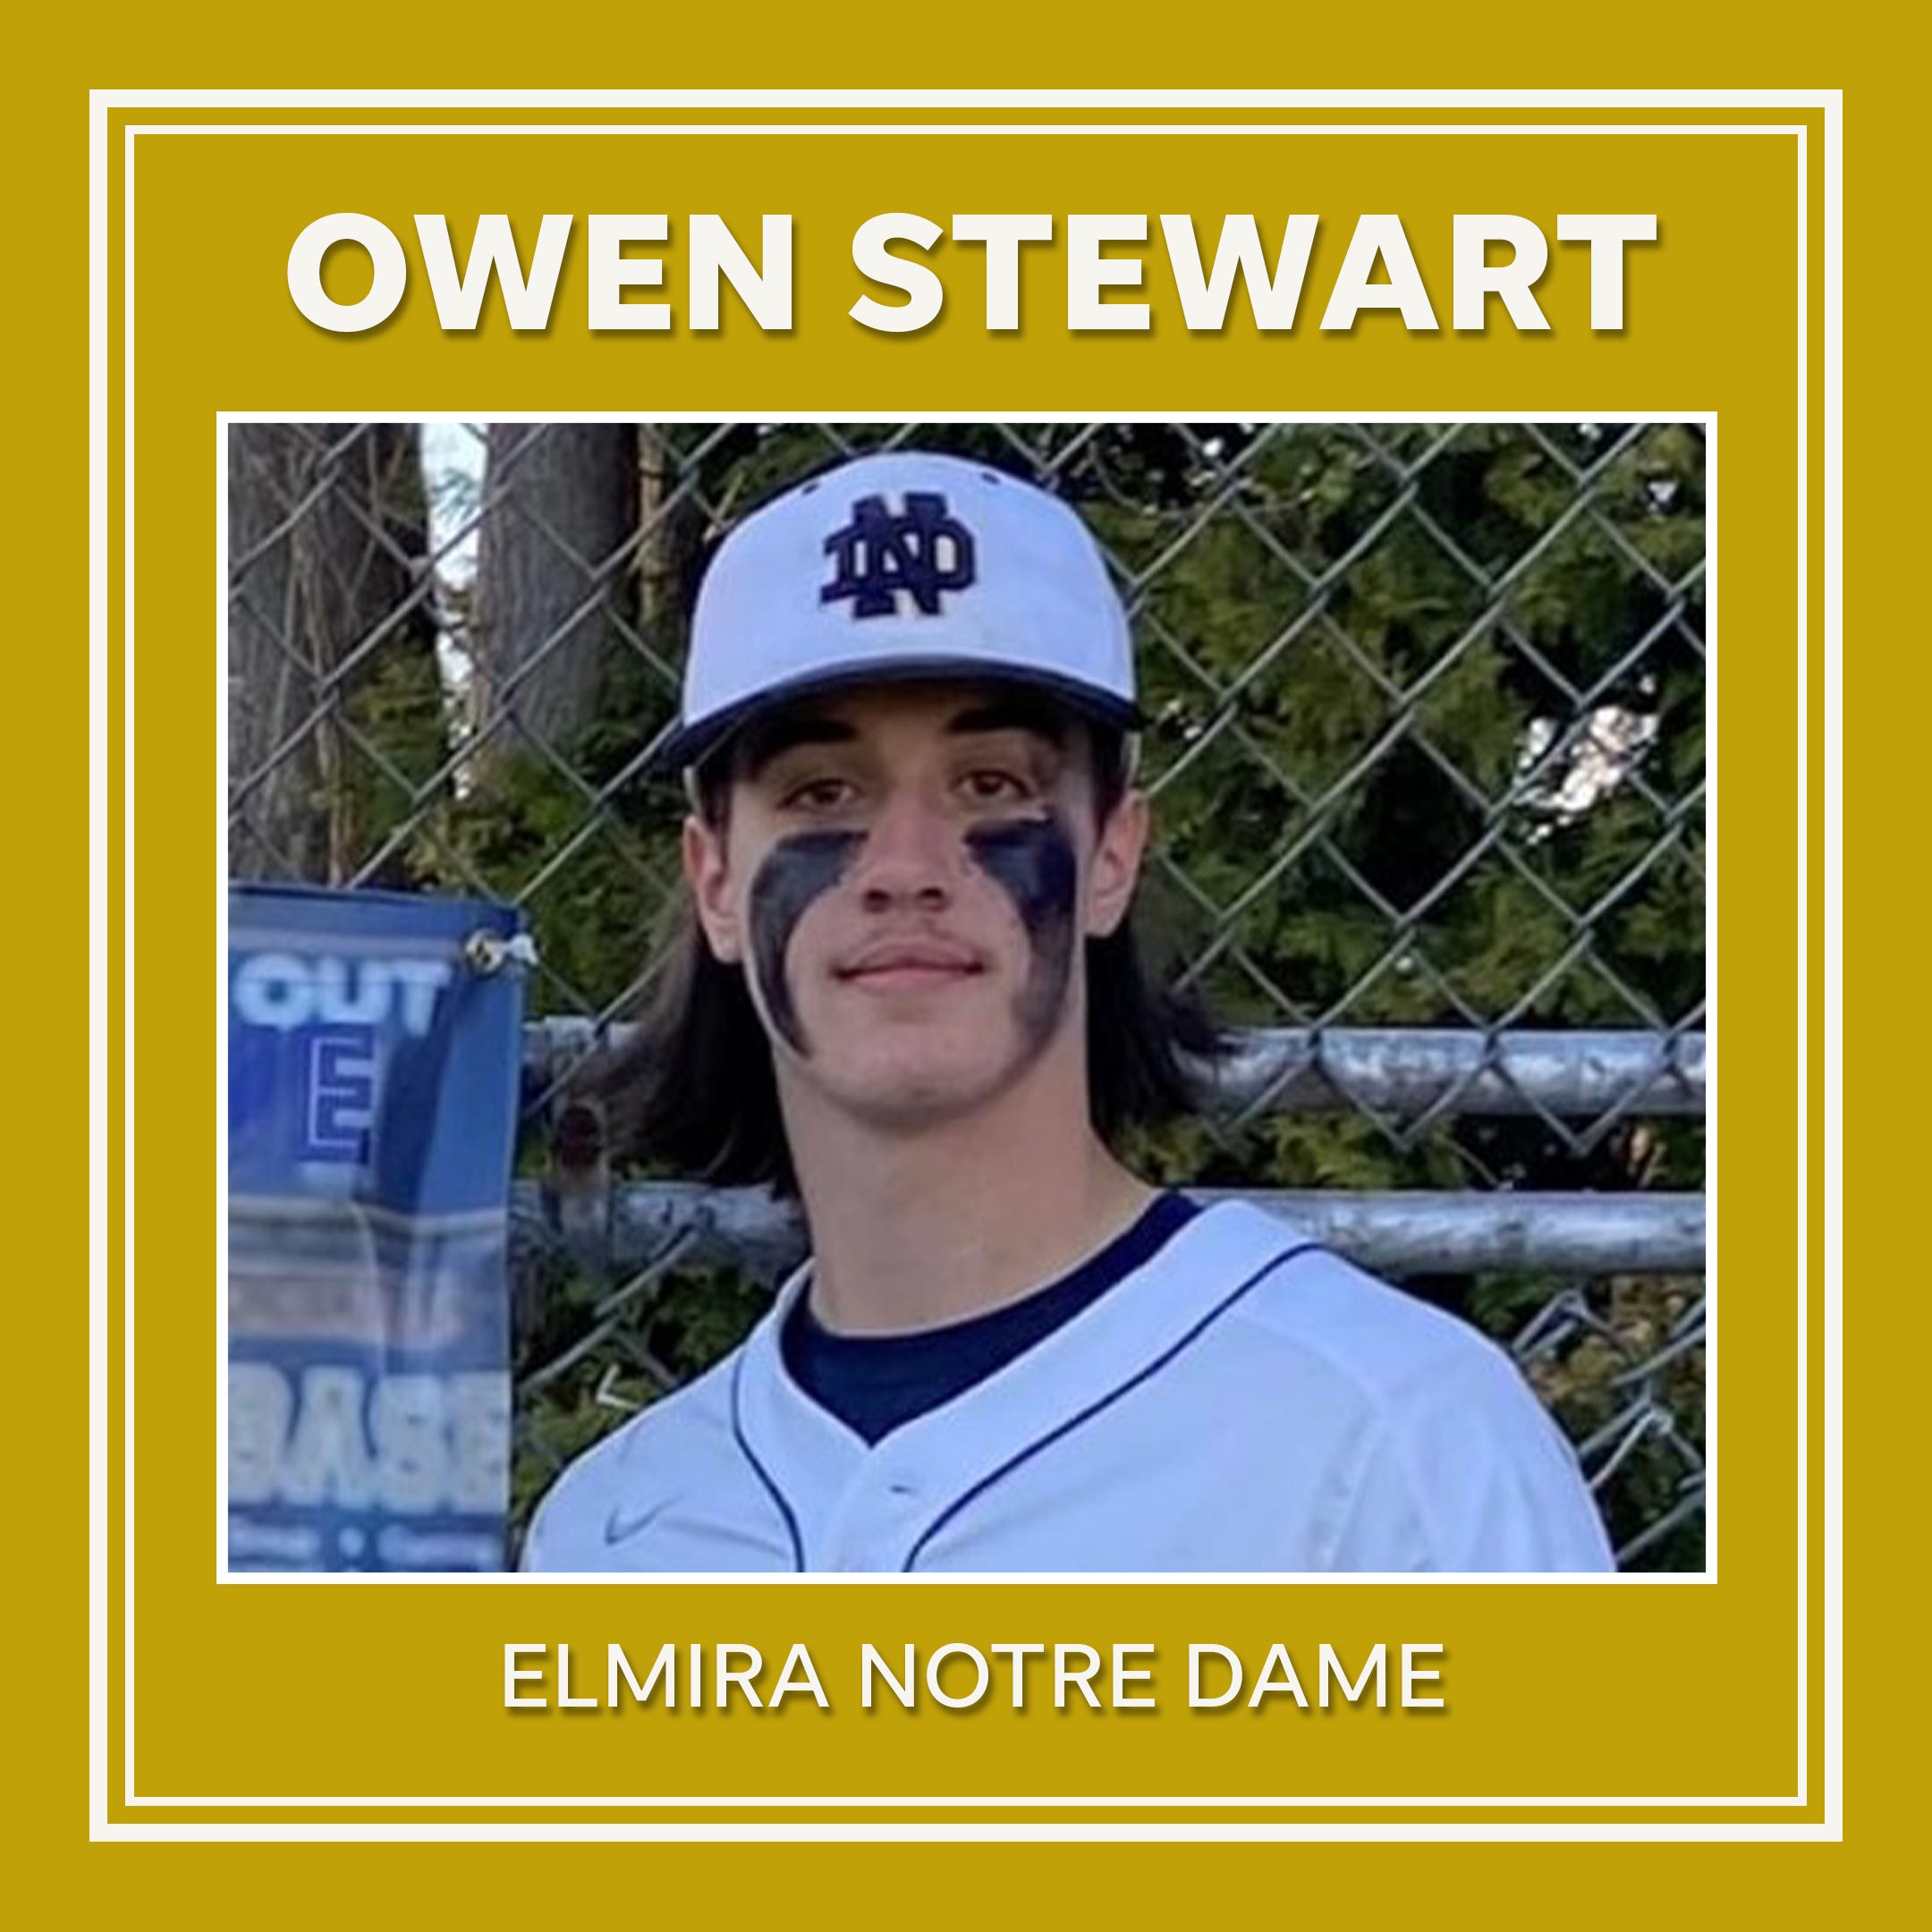 Owen Stewart